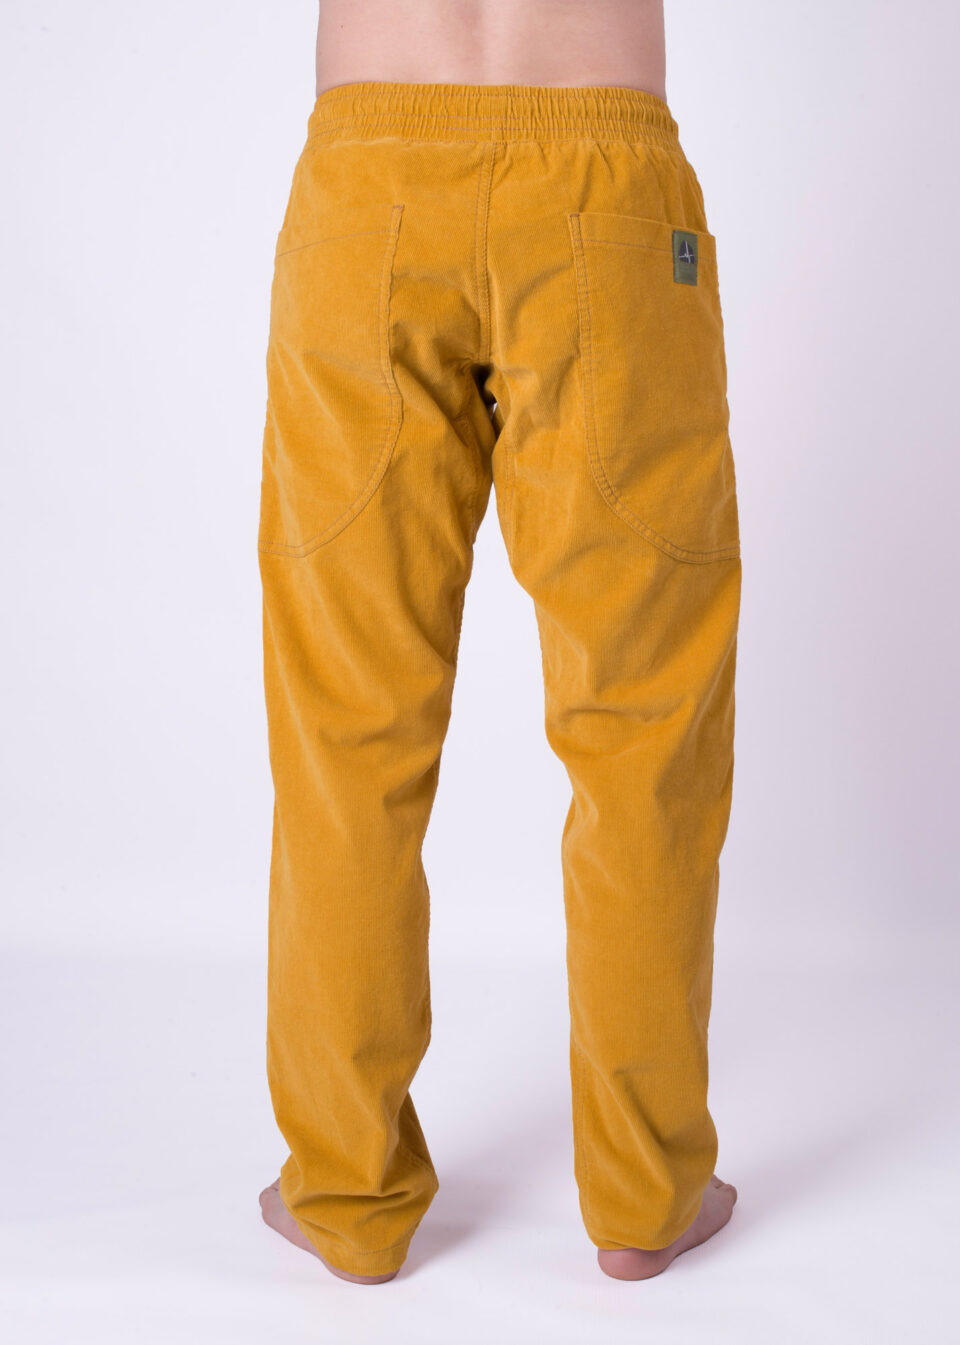 Rocket Pocket corduroy man pants- mustard yellow